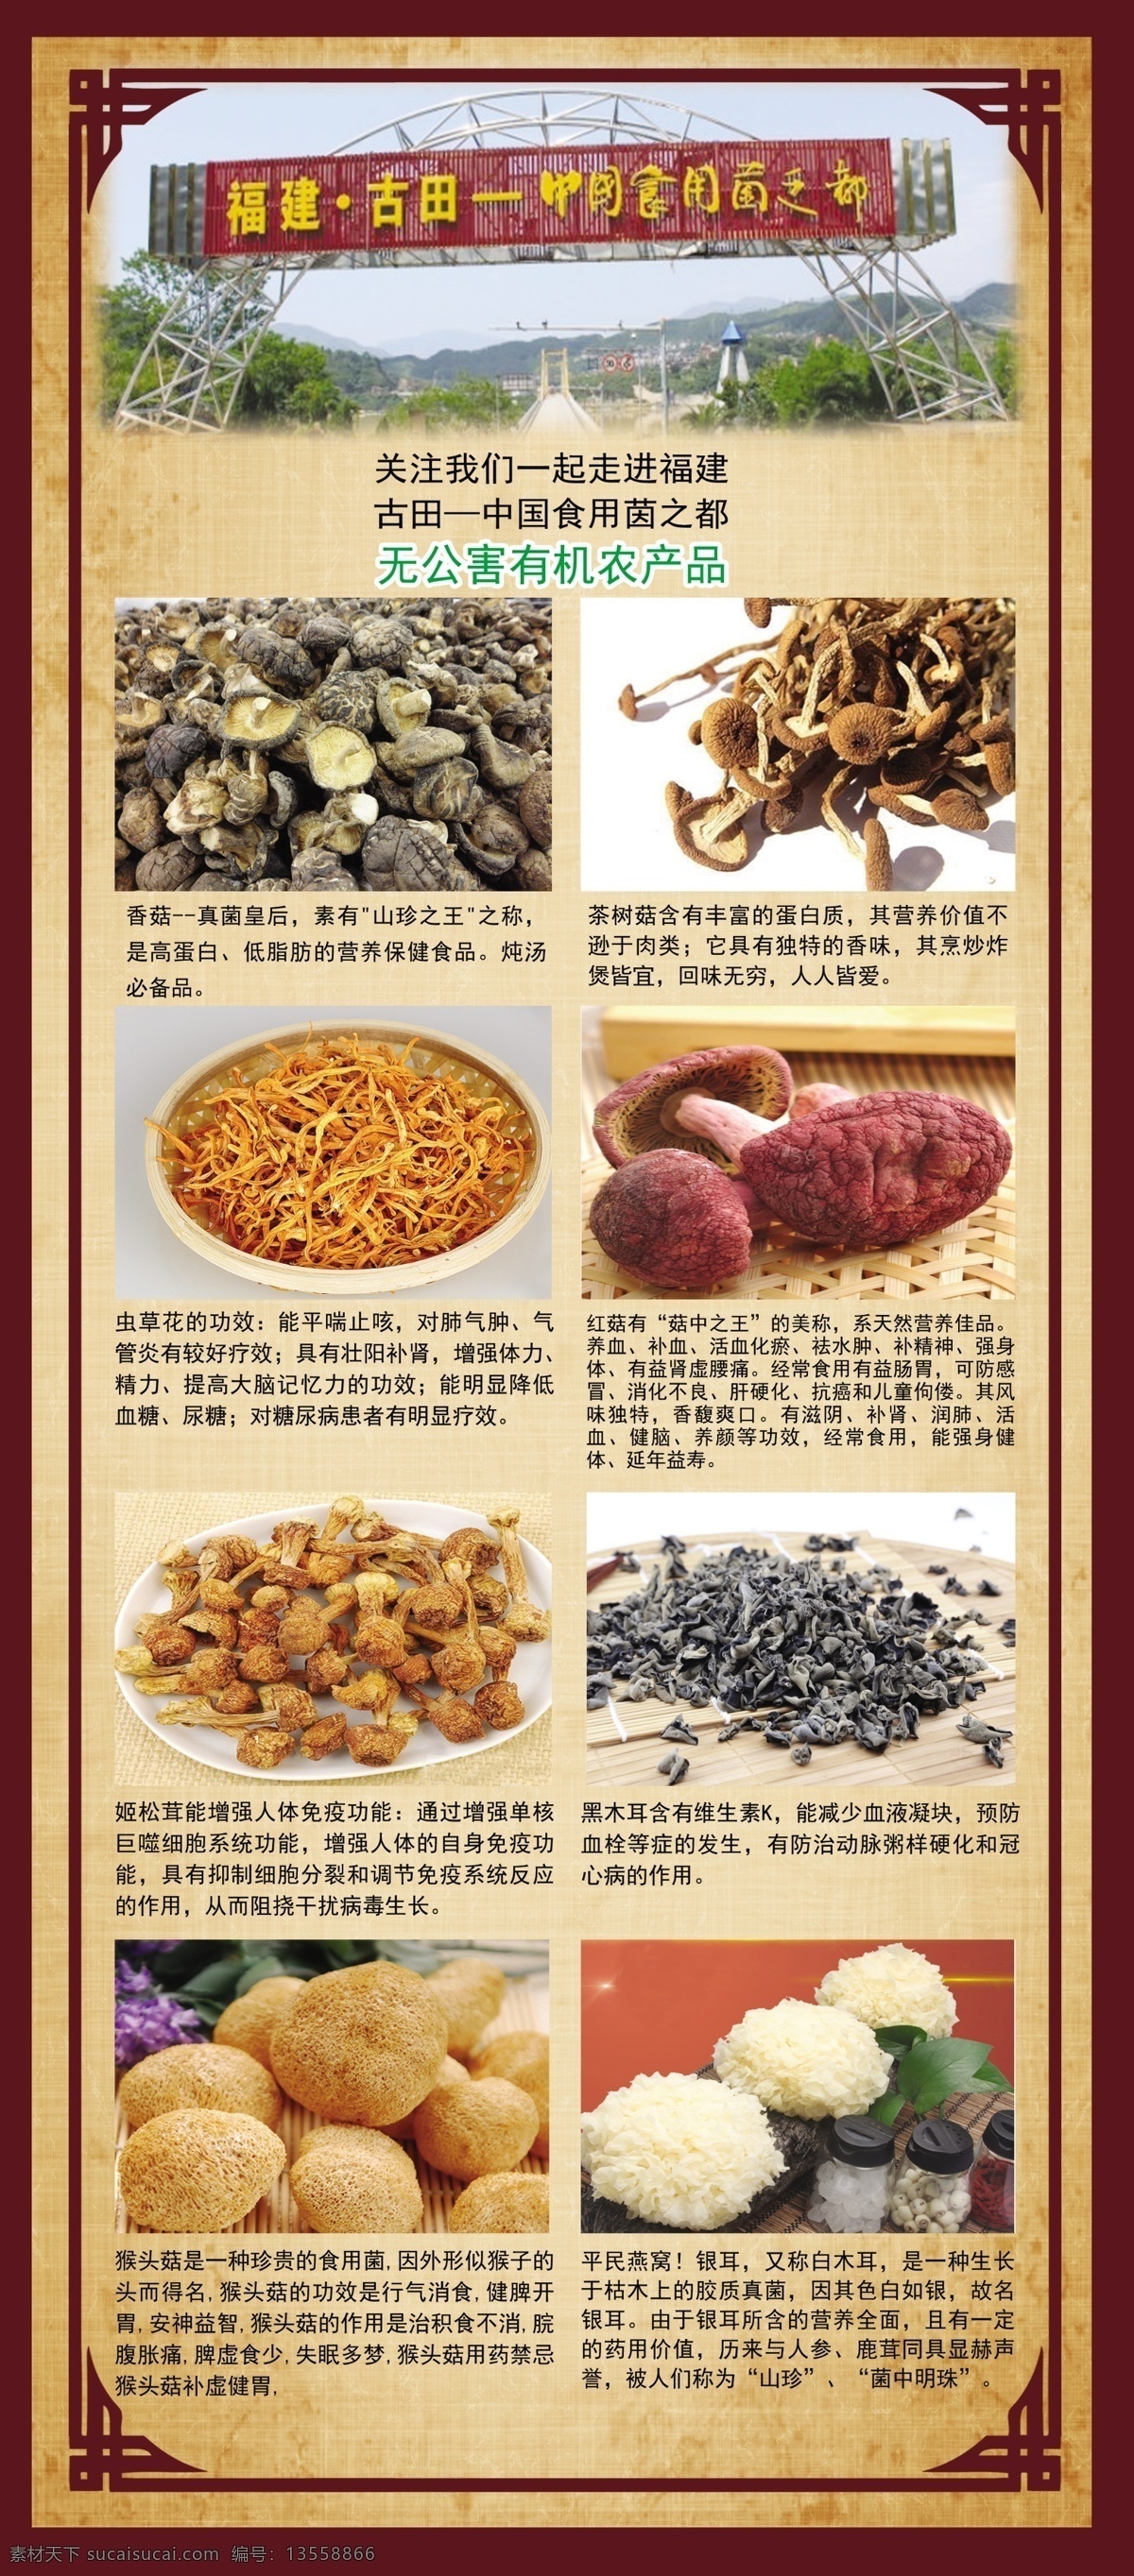 中国 食用 茵 都 蘑菇 种植养殖 食用菌 菌 茵类 有机 大棚 健康食品 烹饪 蔬菜 真菌 营养 新鲜 素食香菇 食用美食 招贴设计